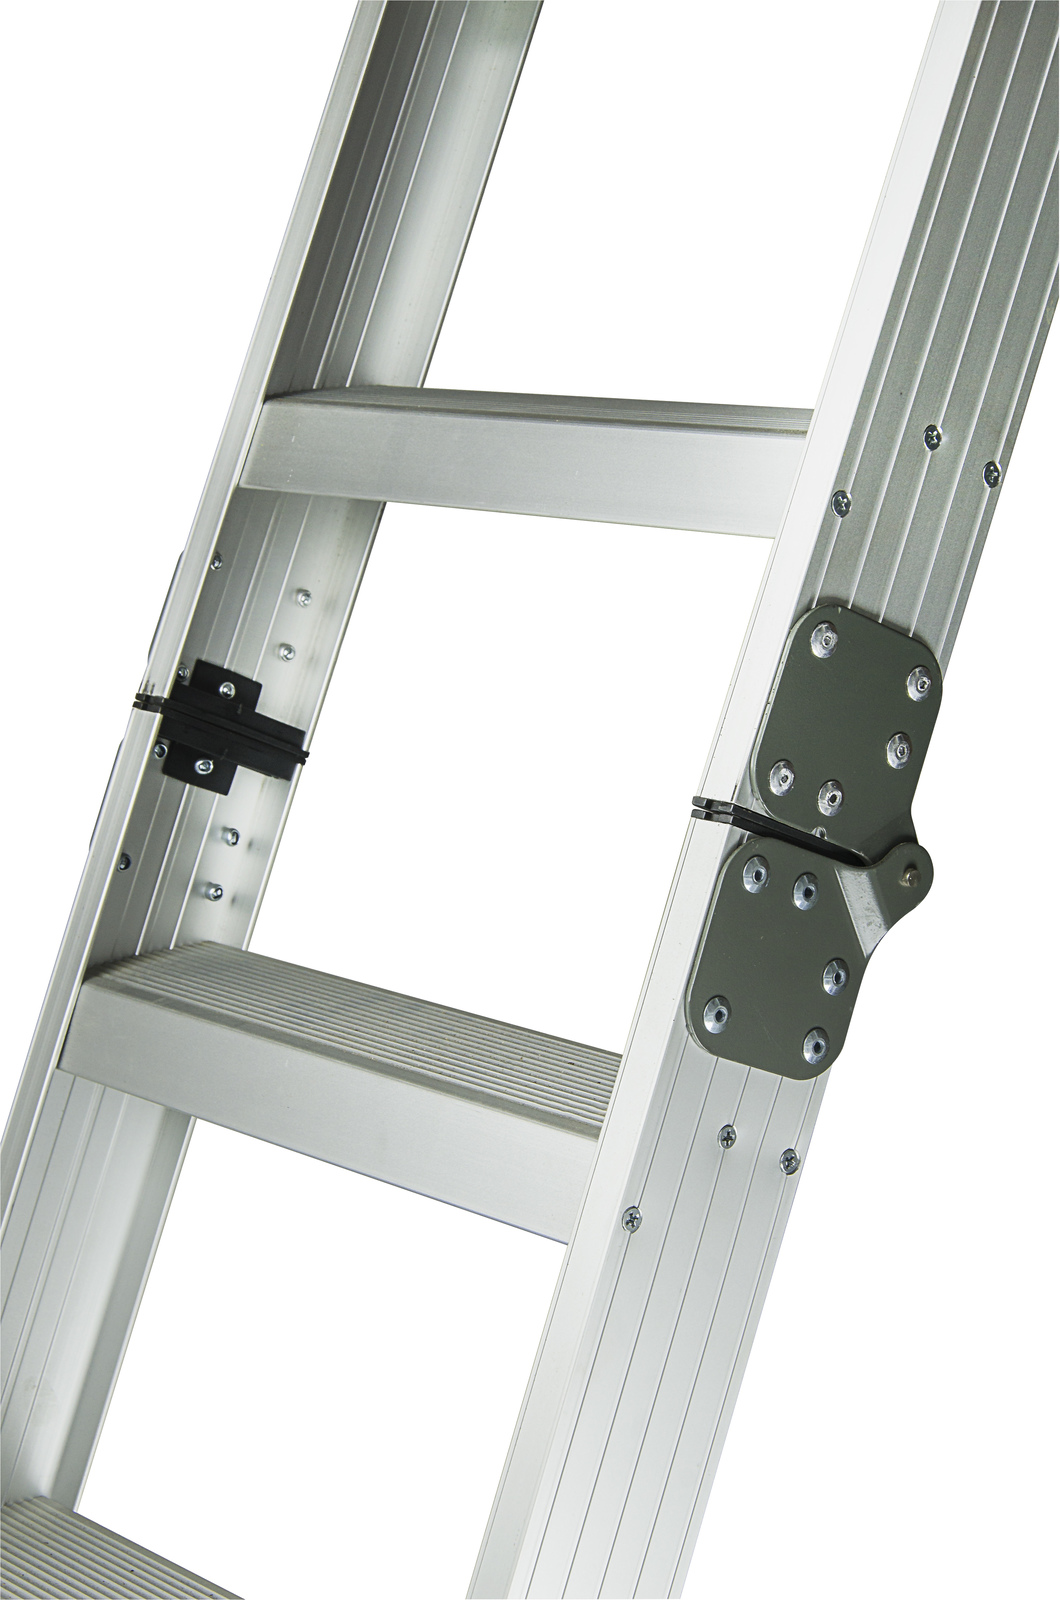 KASW45 Deluxe Aluminium Attic Ladder